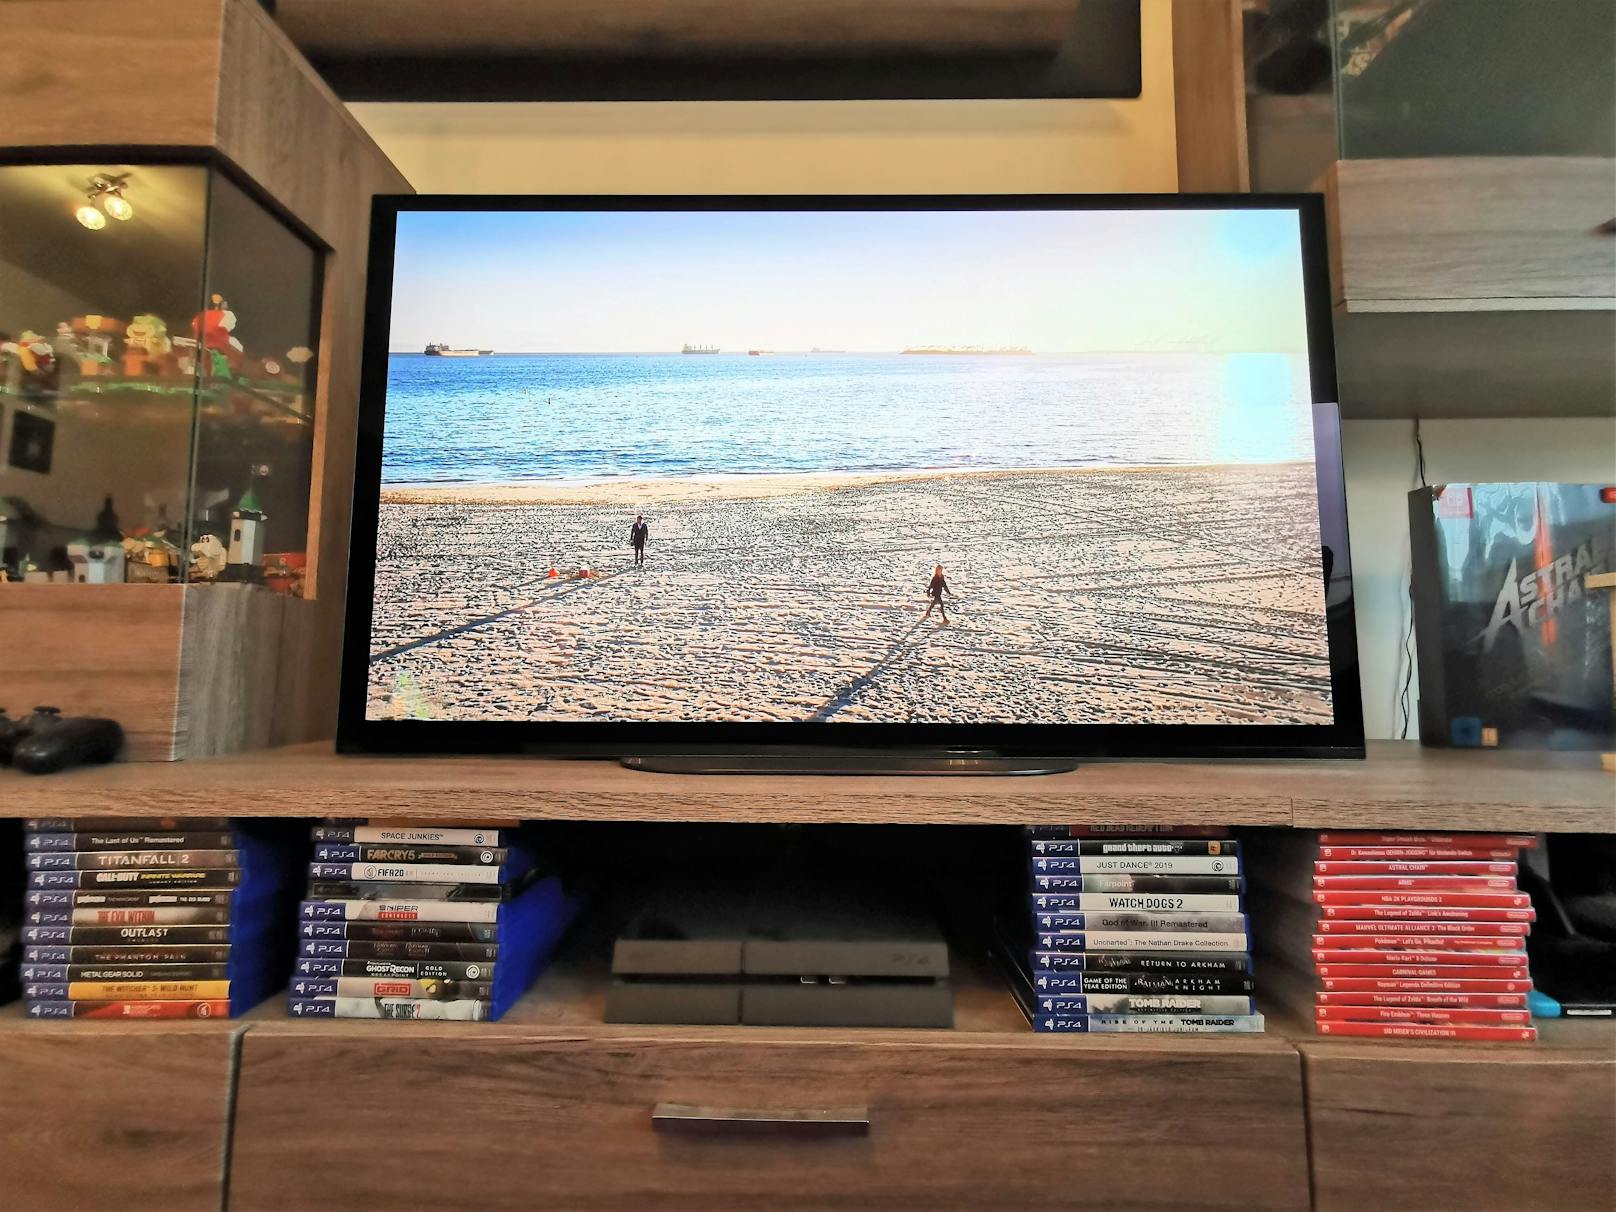 Mit 48 Zoll Bildschirmdiagonale ist der neue A9 ein kompaktes Modell, das auf so gut wie jeder Fernsehwand oder auf jedem Abstellplatz Raum finden sollte.